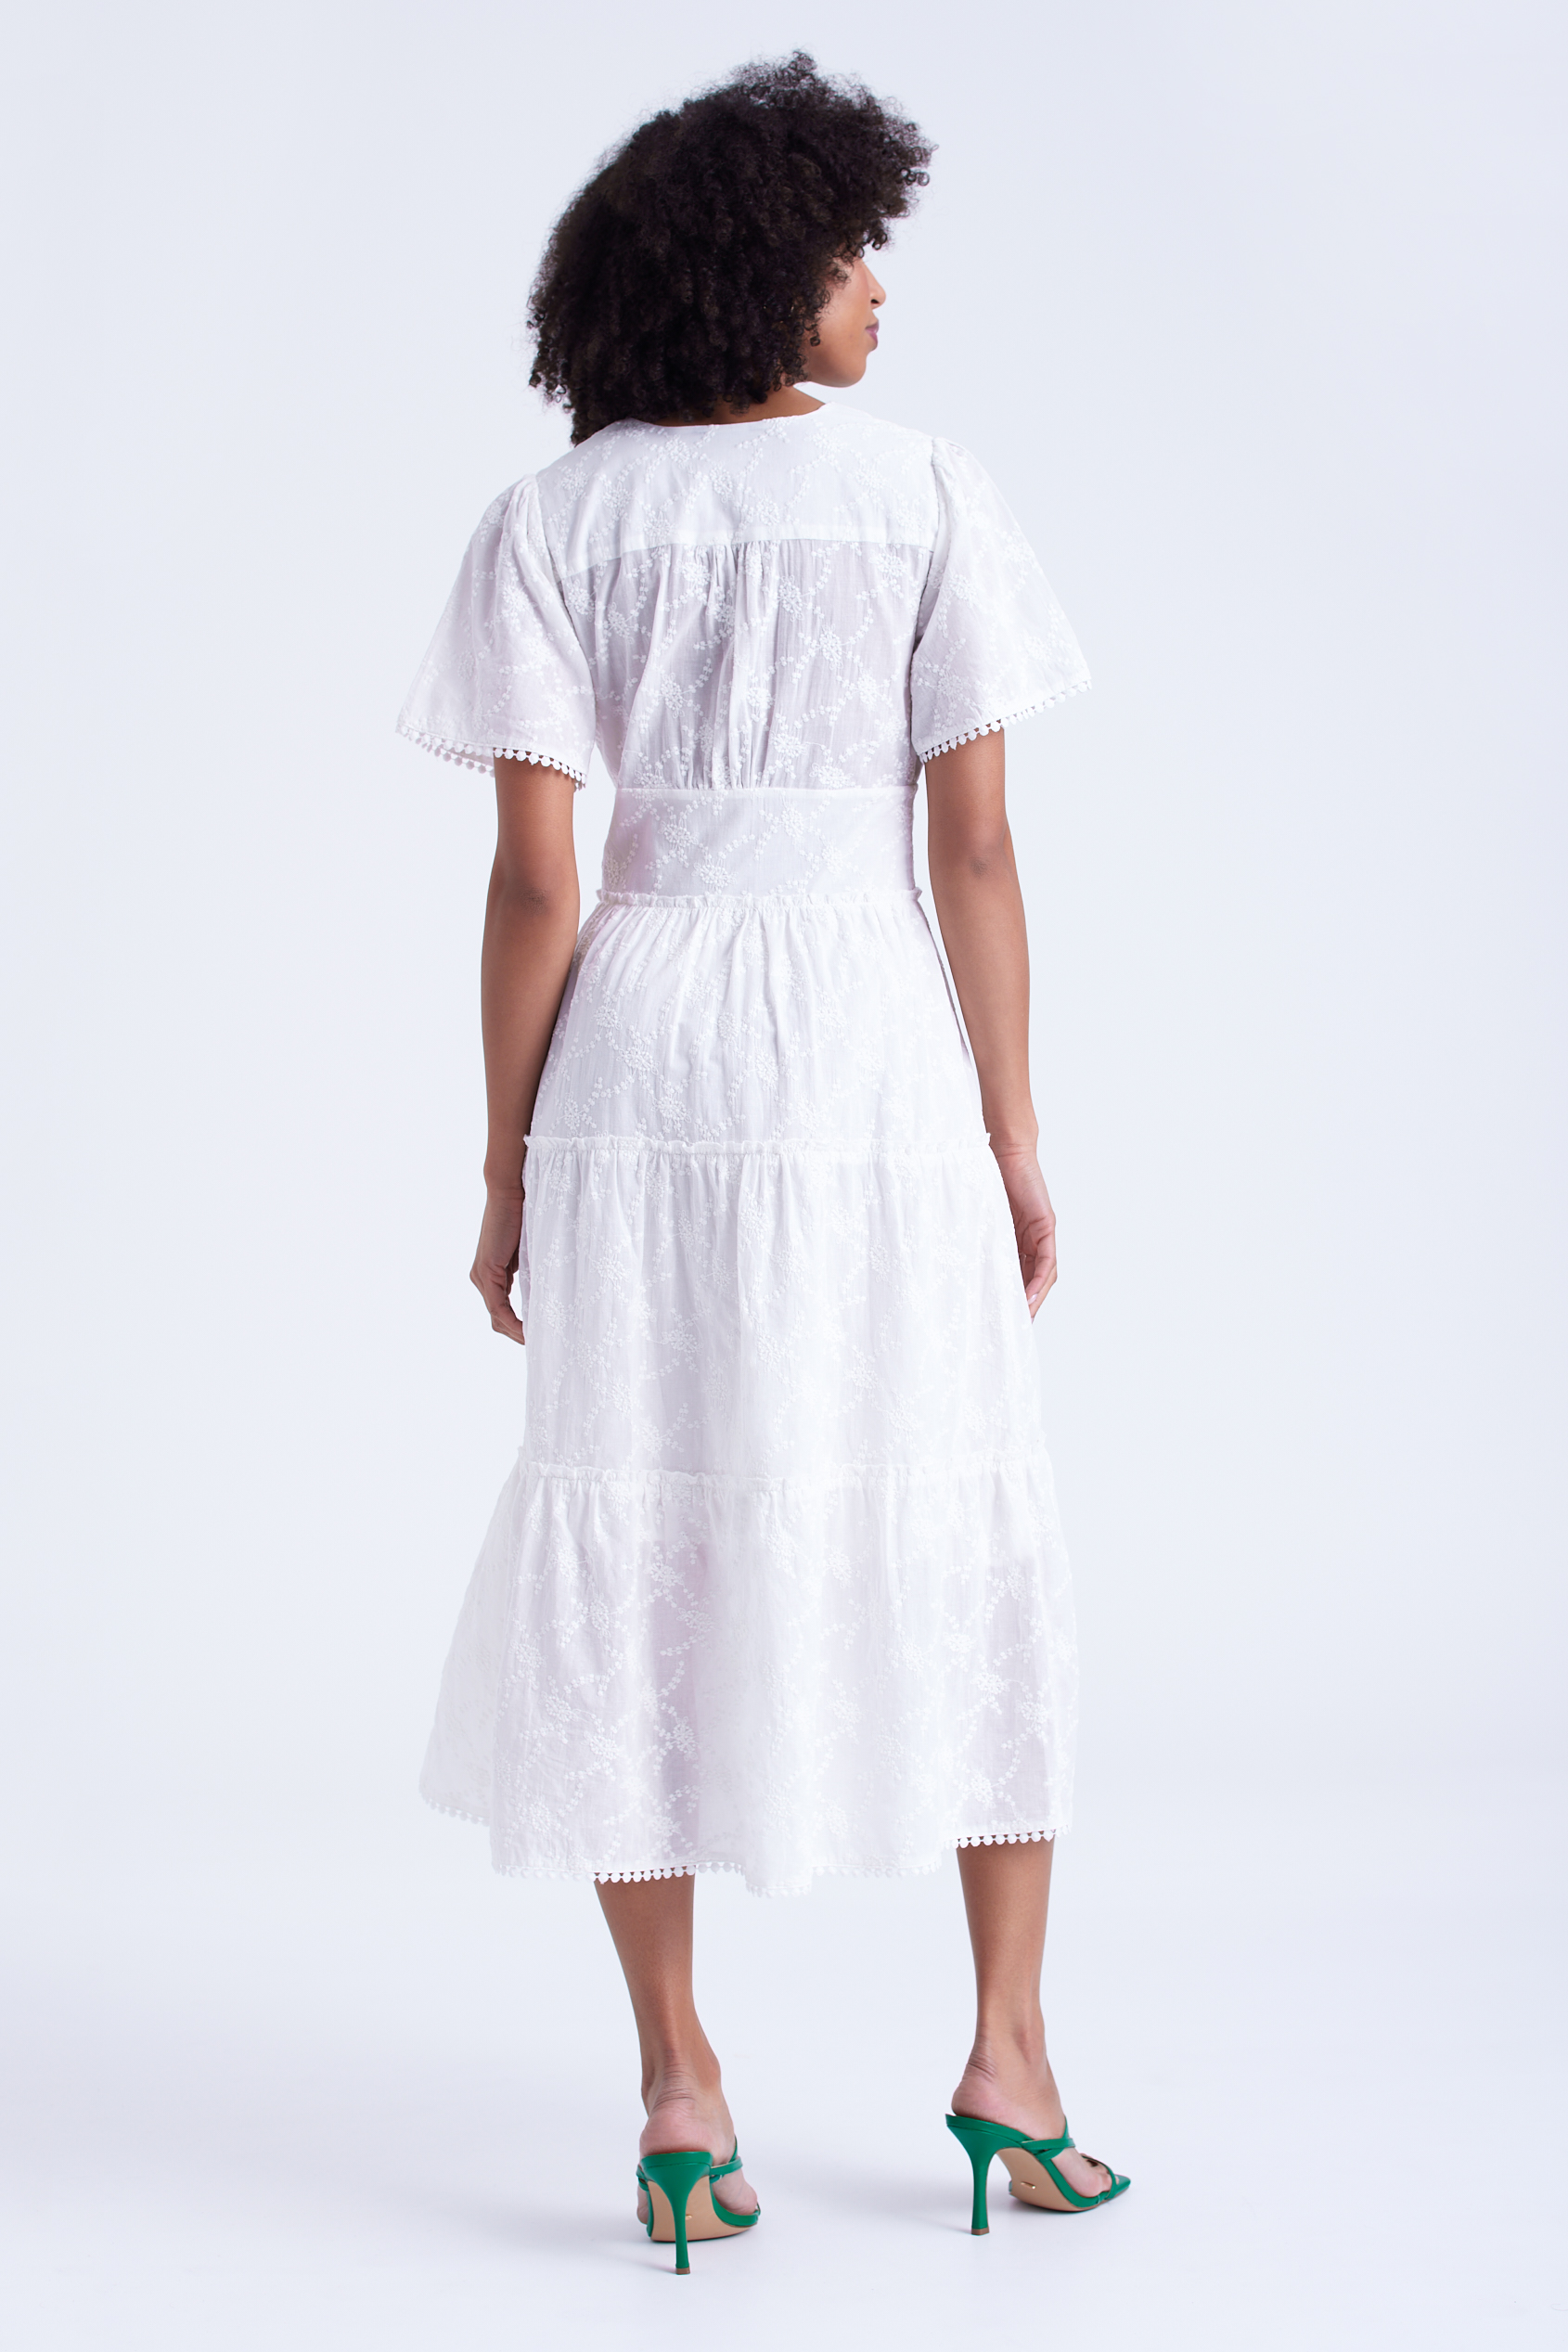 Biała, haftowana sukienka z falbaną